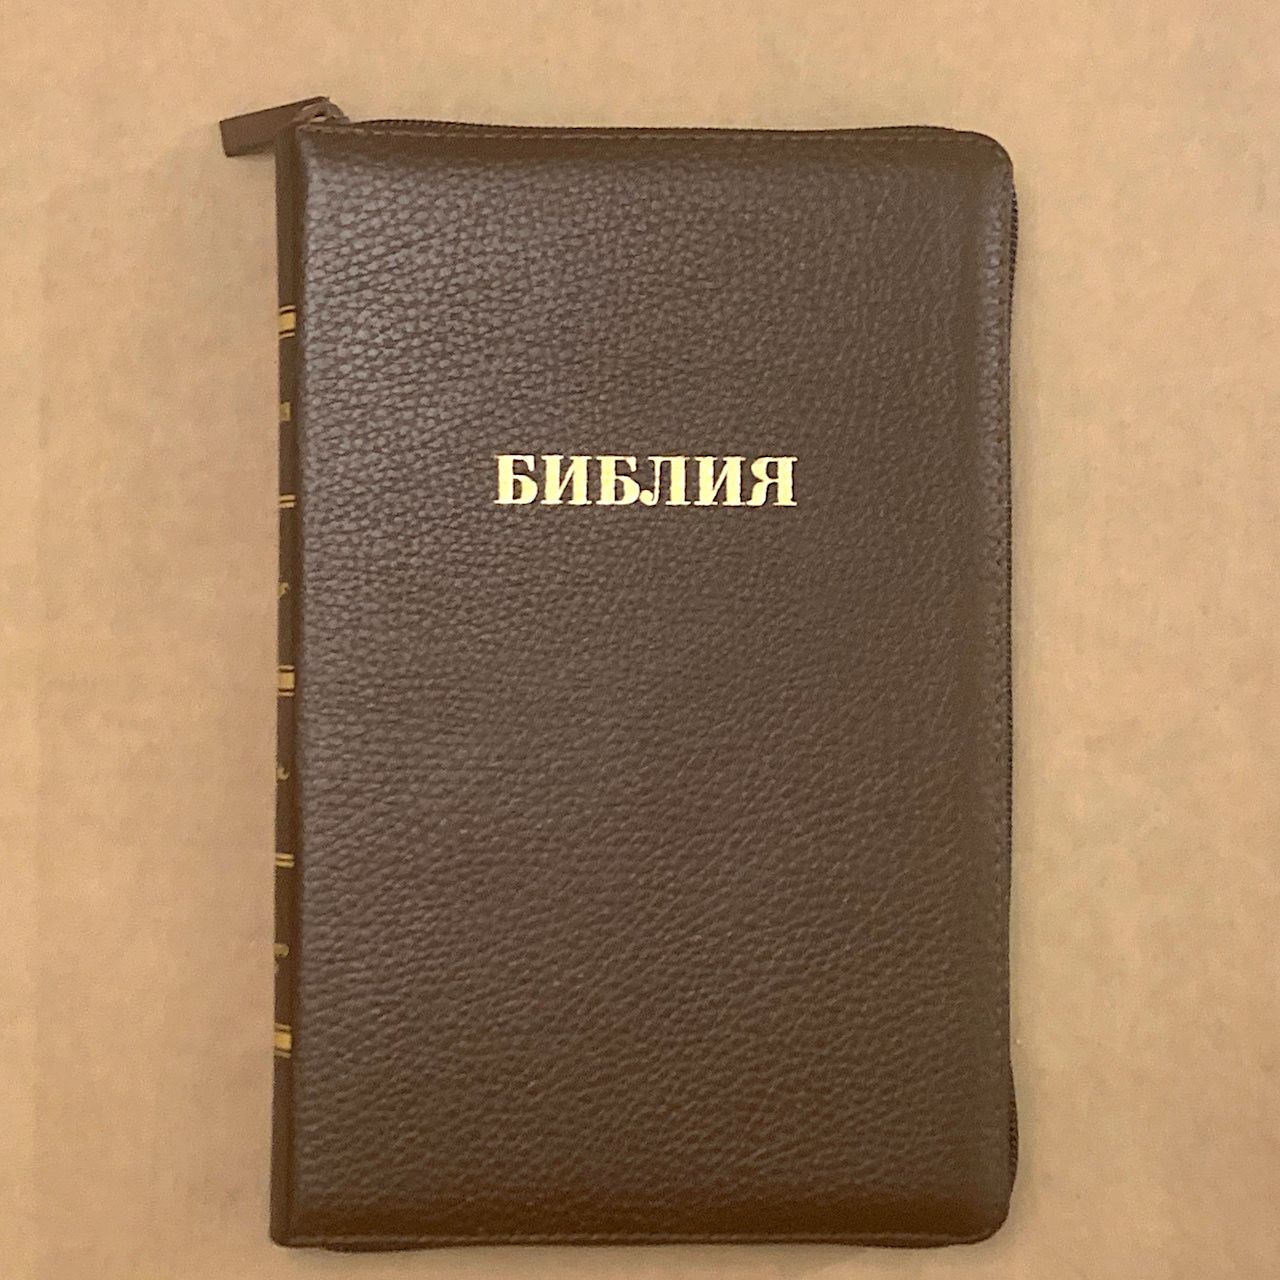 БИБЛИЯ 055z кожаный переплет на молнии, цвет коричневый, средний формат, 135*210 мм, параллельные места по центру страницы, золотой обрез, крупный шрифт